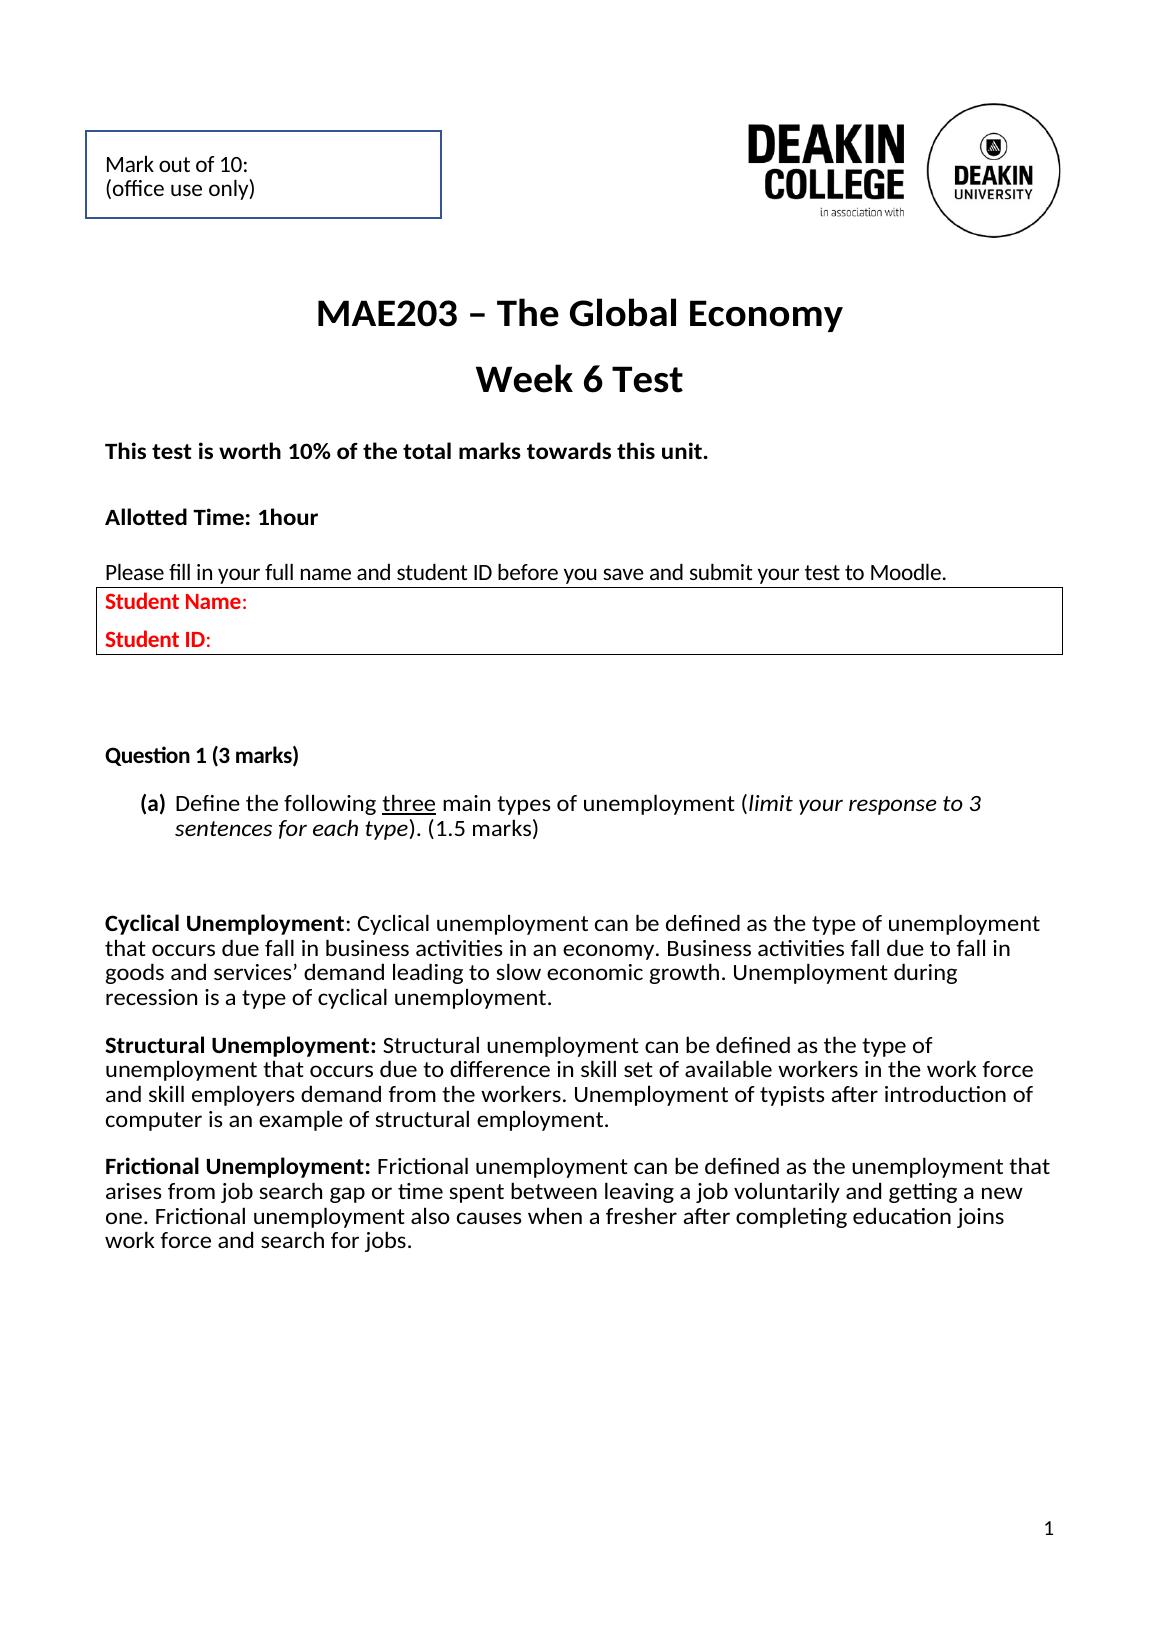 MAE203 | The Global Economy  | Week 6 Test_1